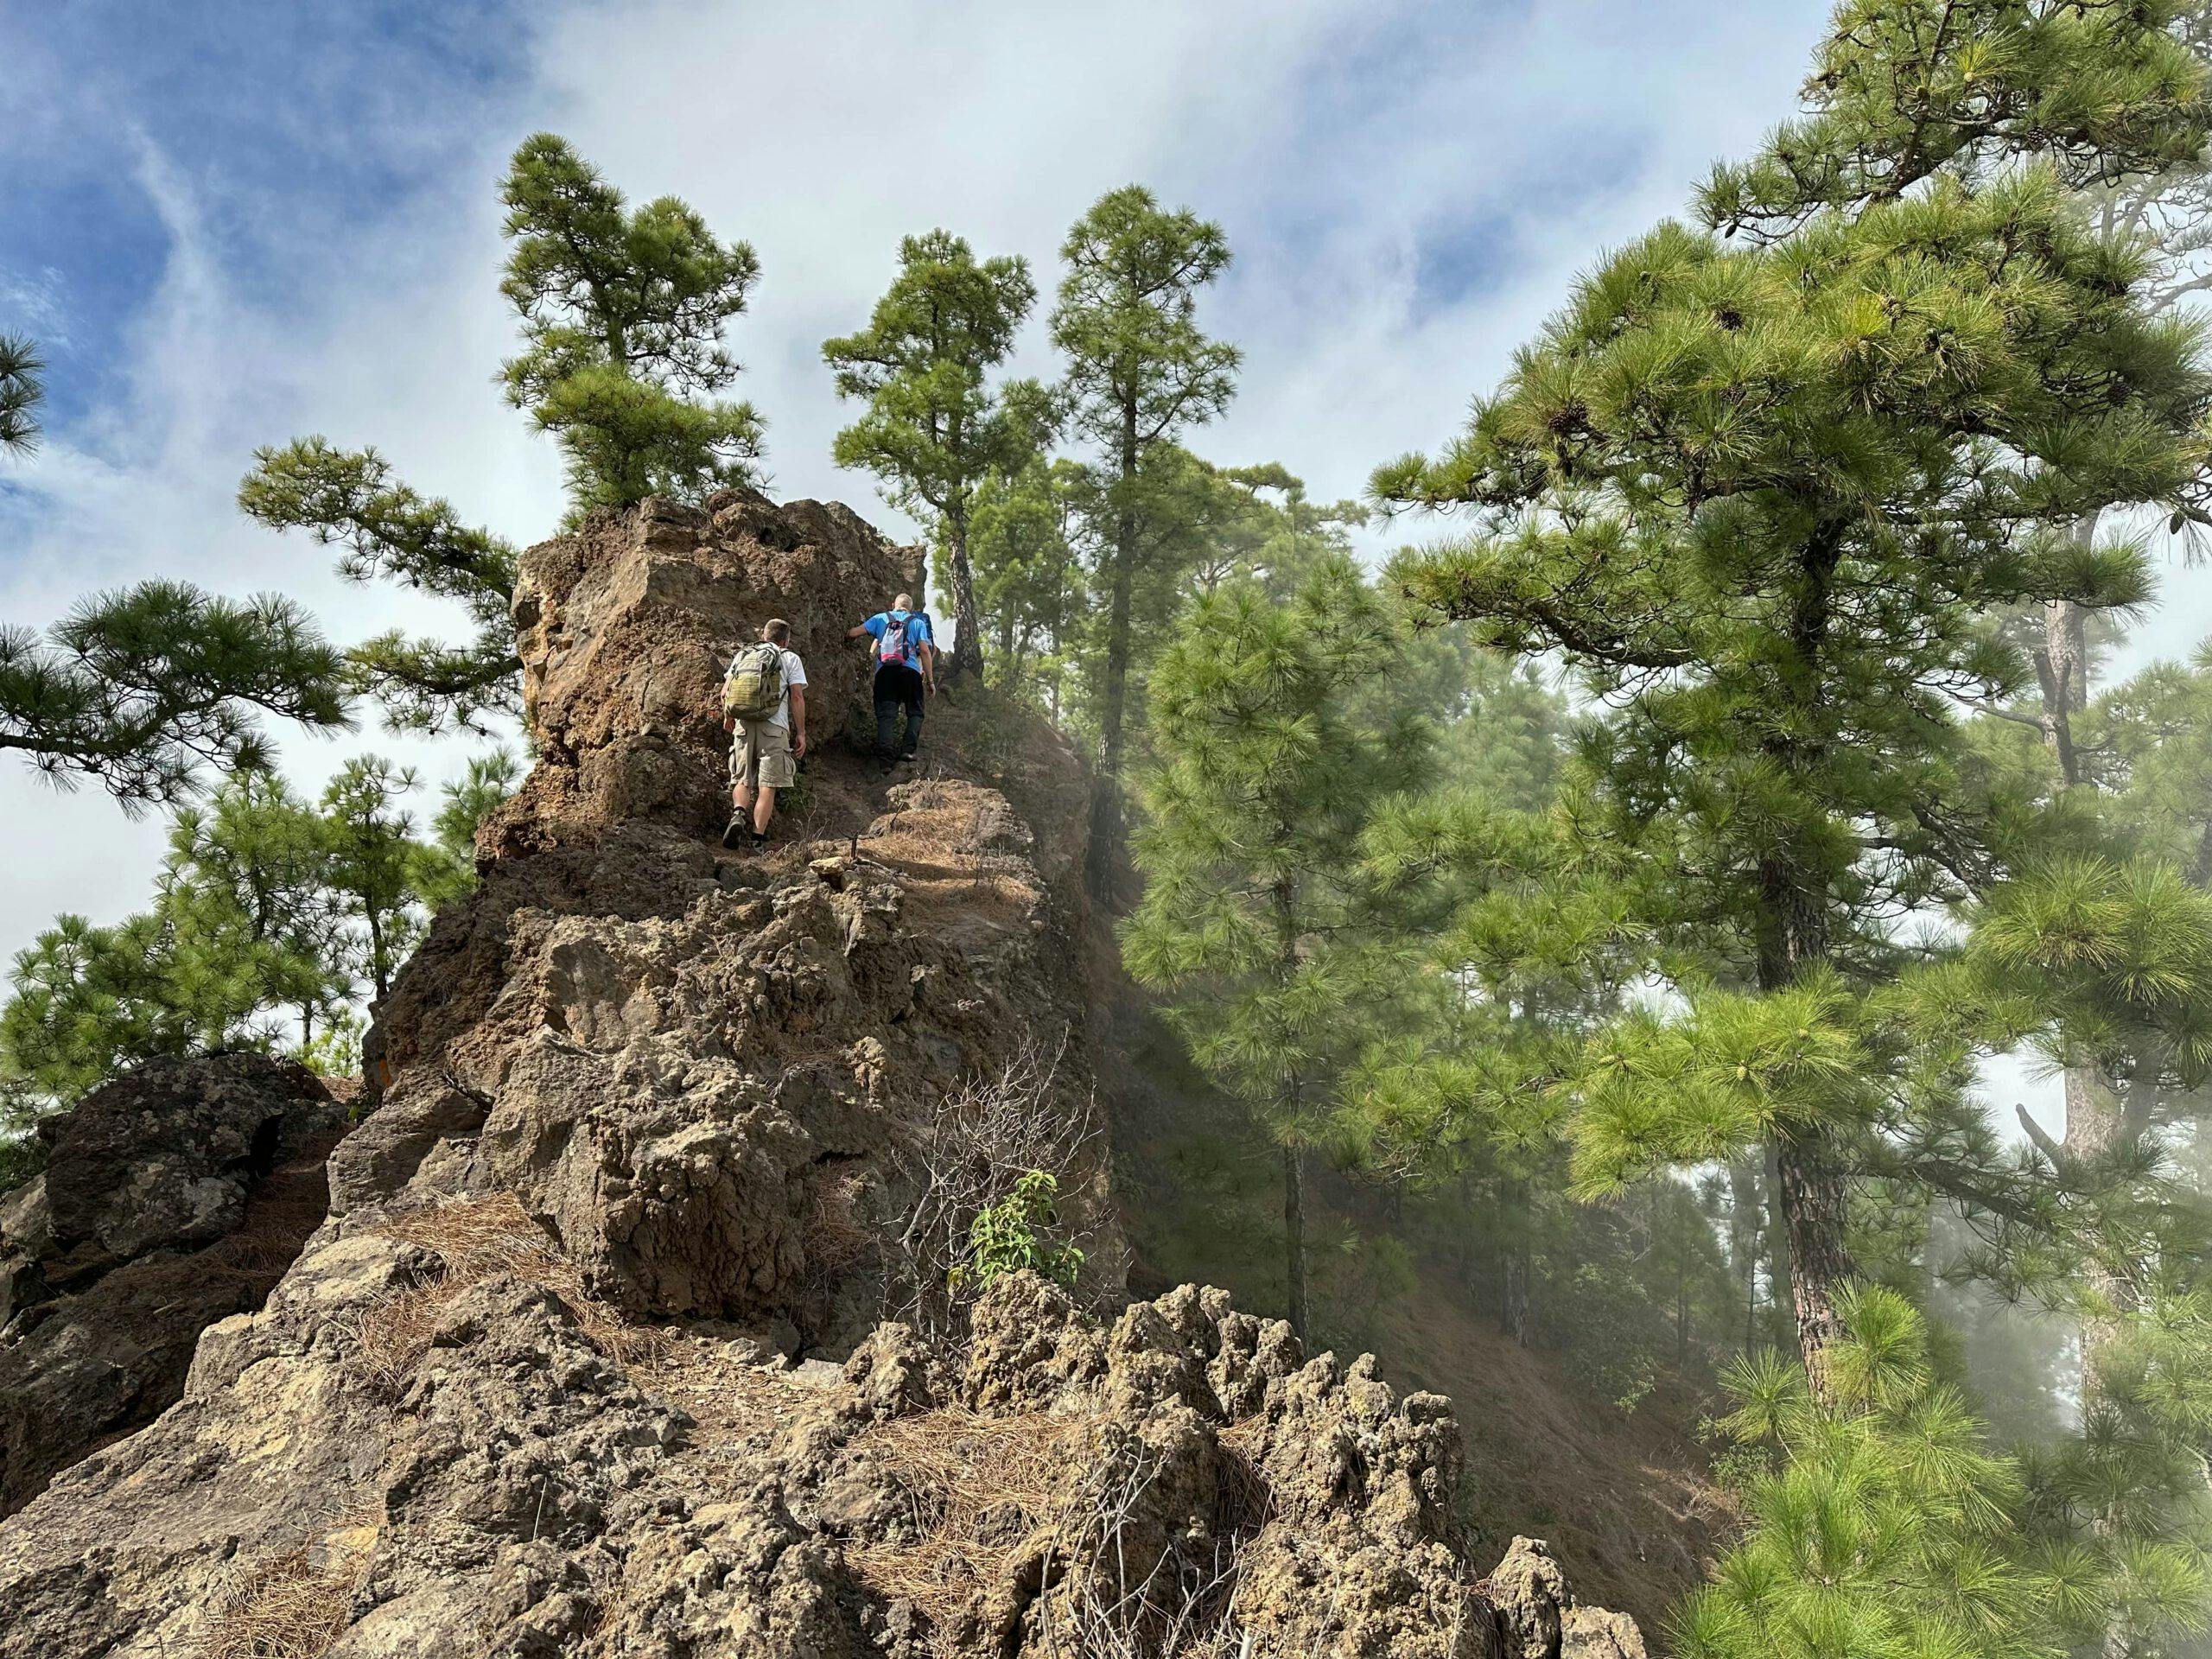 Pico Igonse – Subida y bajada empinada a un pico impresionante